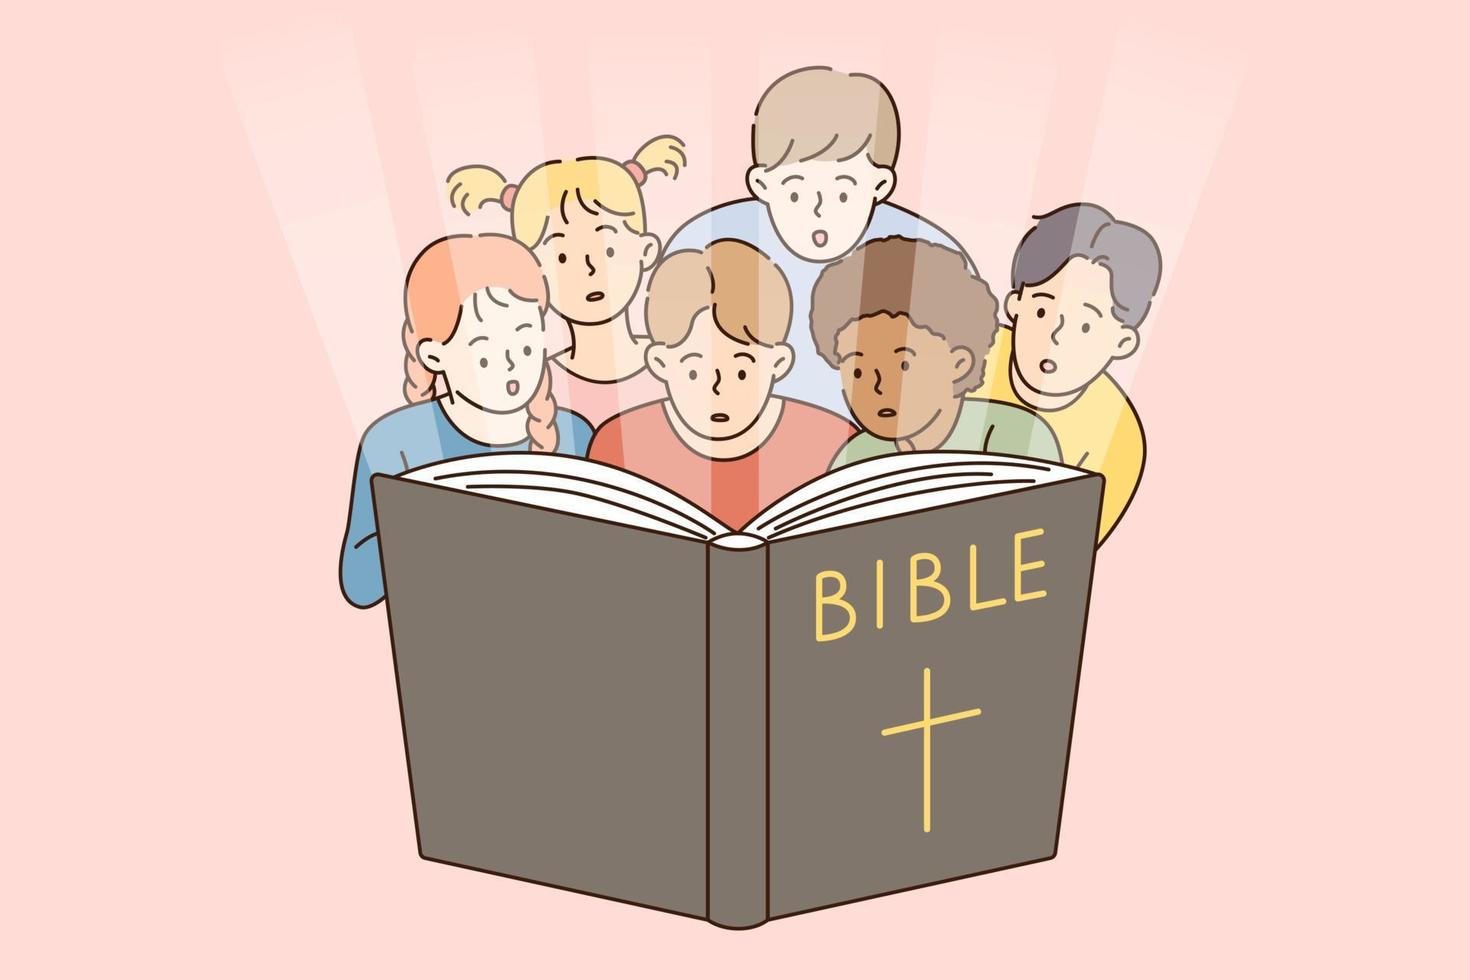 educación religiosa y concepto bíblico. grupo de niños pequeños interesados sentados y mirando la biblia todos juntos ilustración vectorial vector